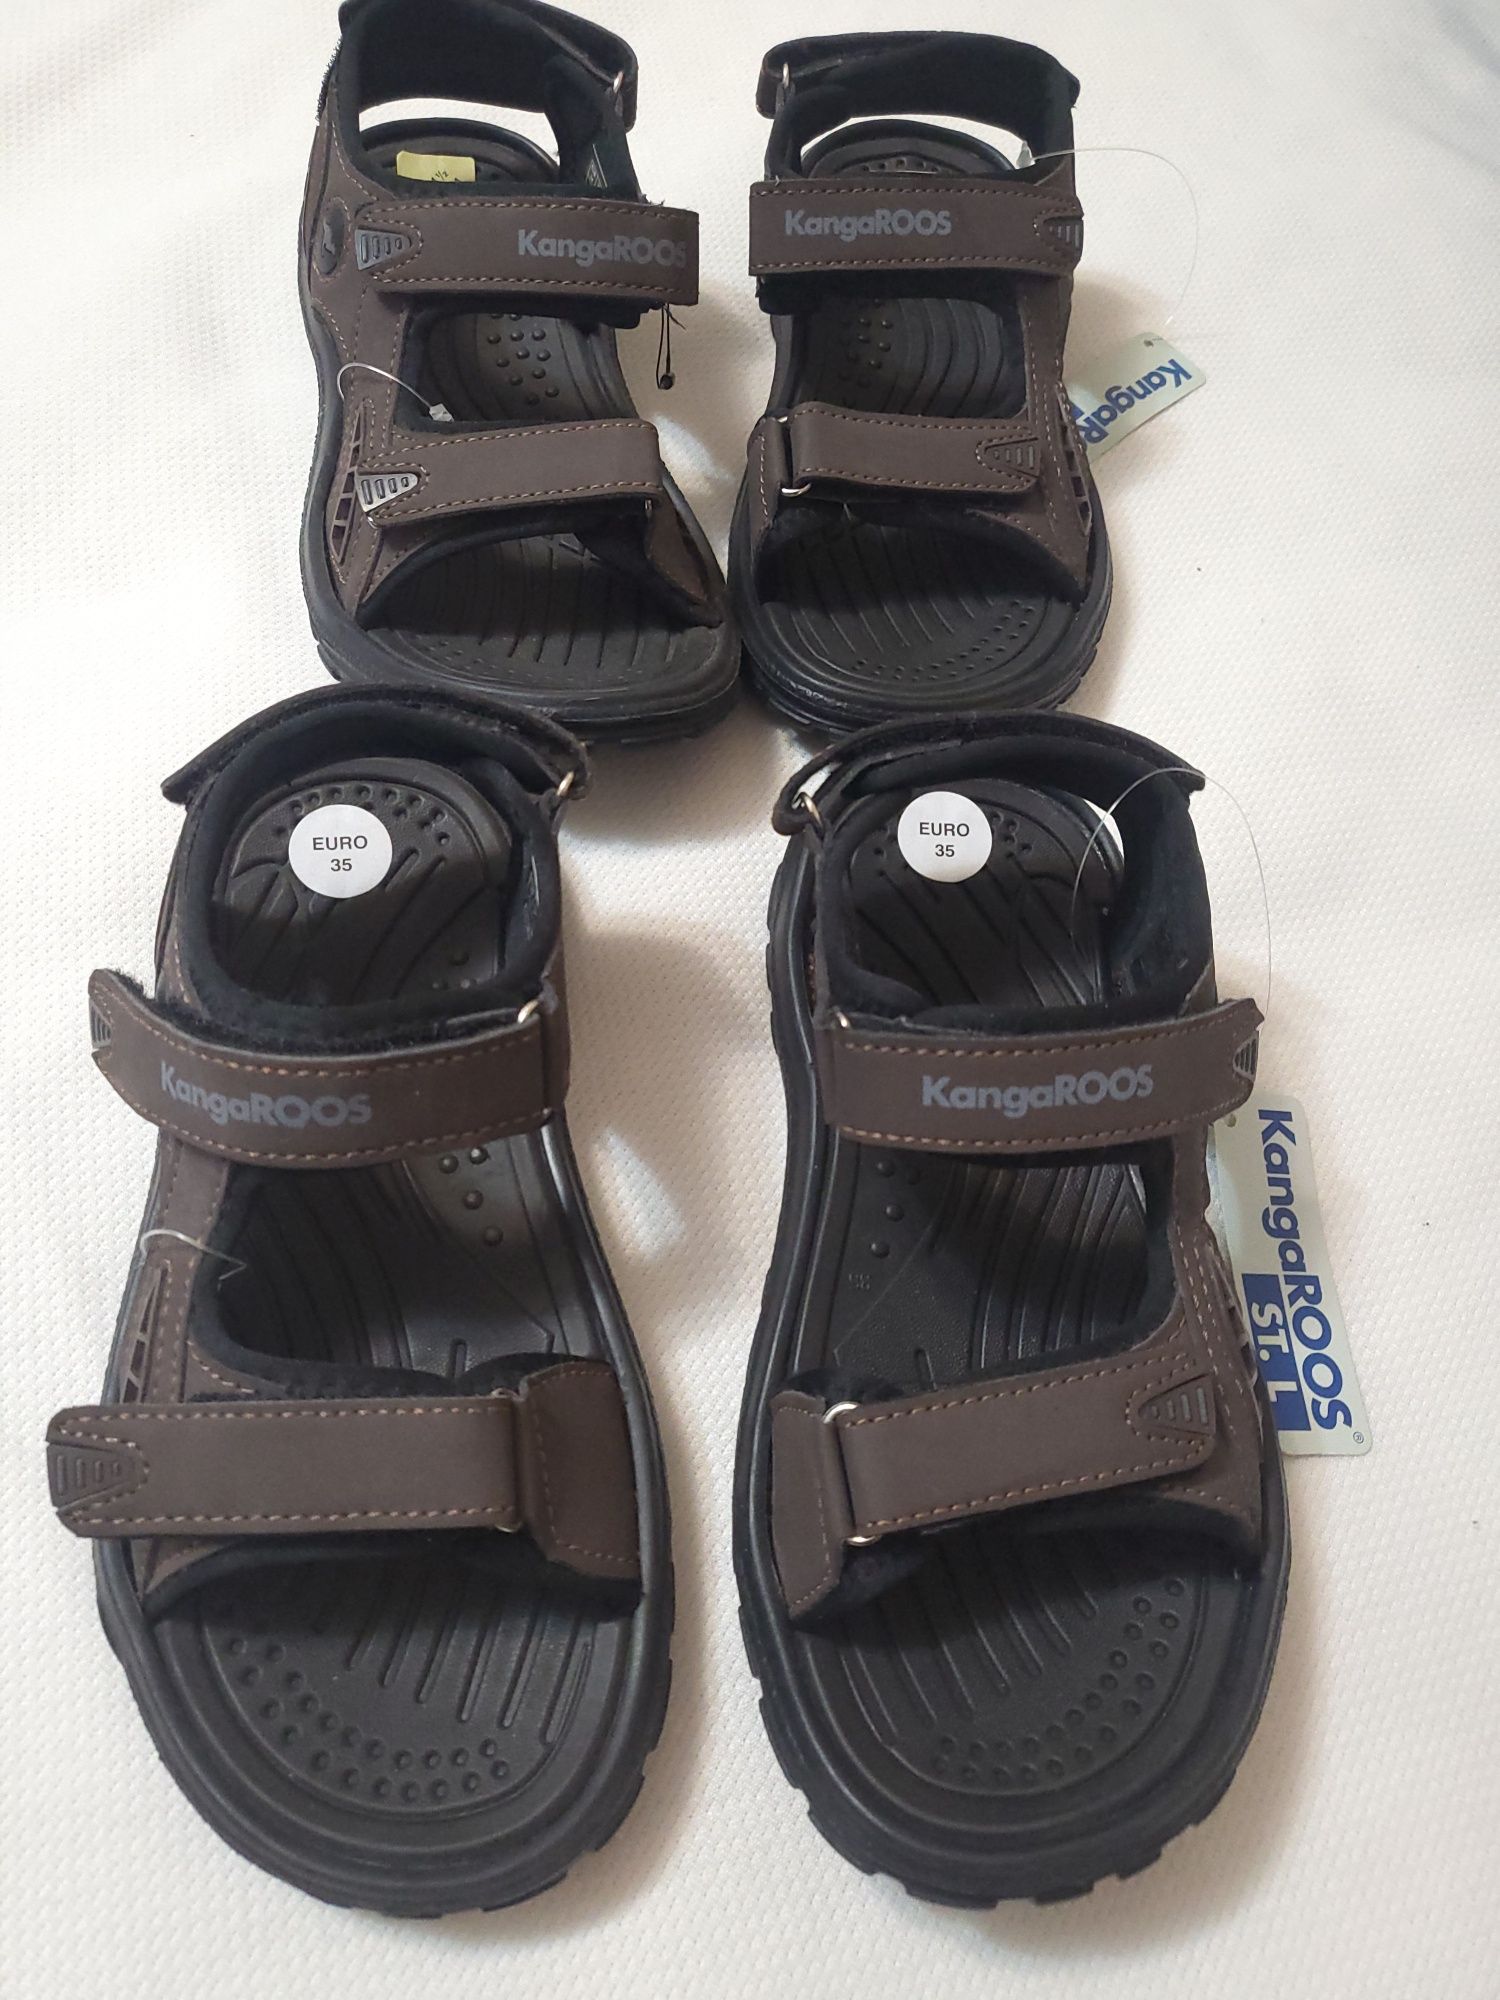 KangaRoss сандалі для хлопчика,босоніжки  KangaRoos р.34 та 35